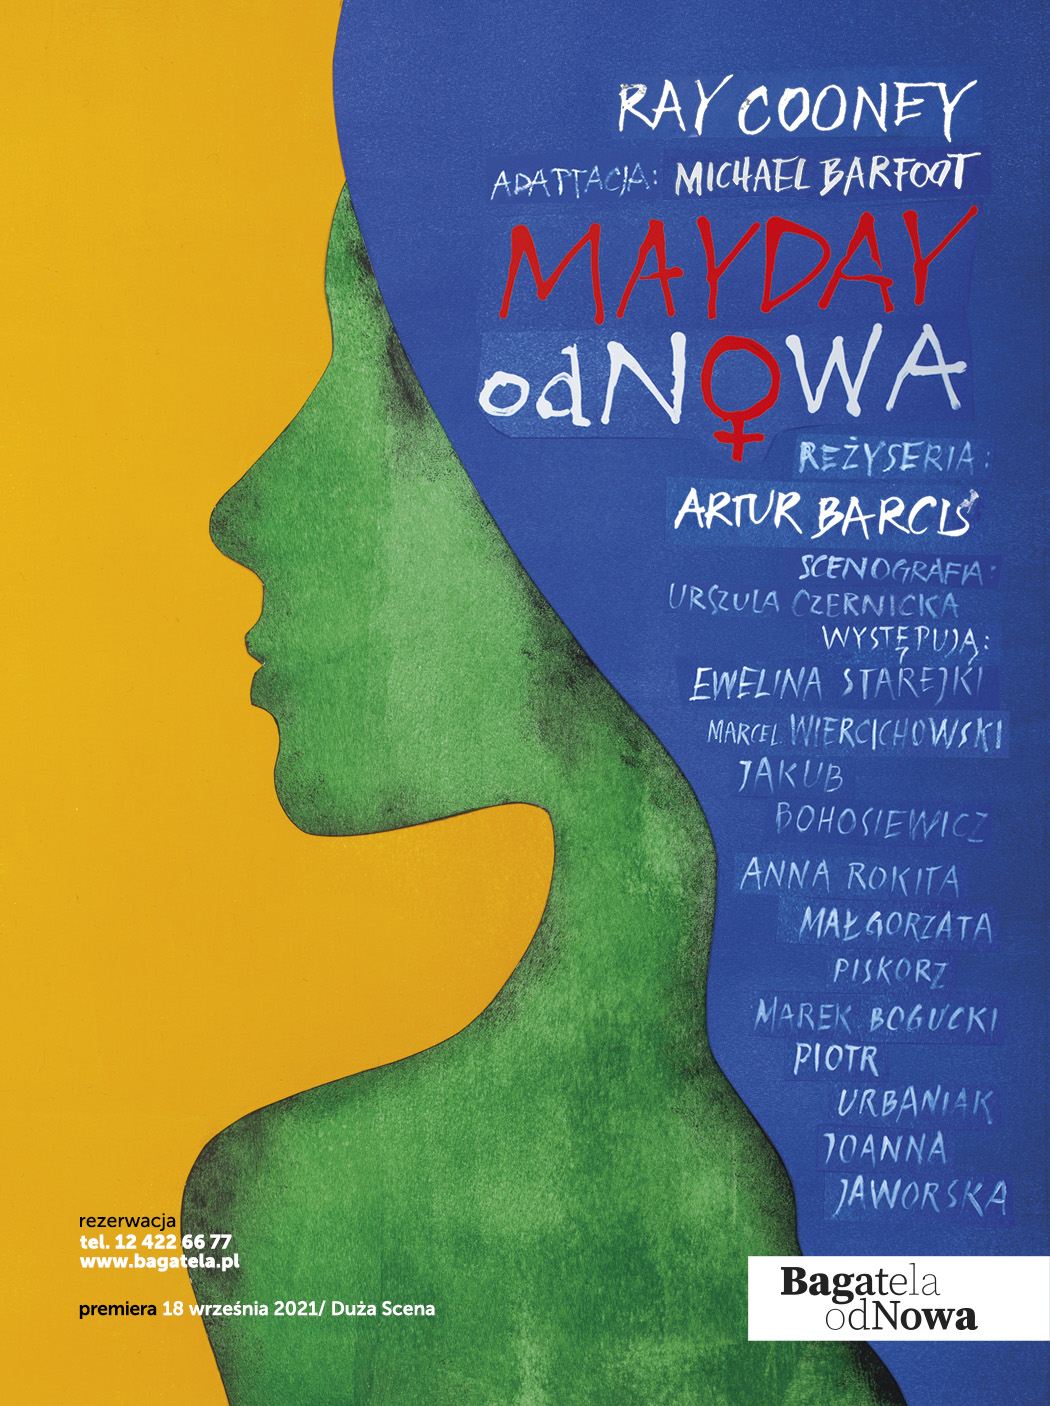 Mayday odnowa - plakat do spektaklu w Teatrze Bagatela